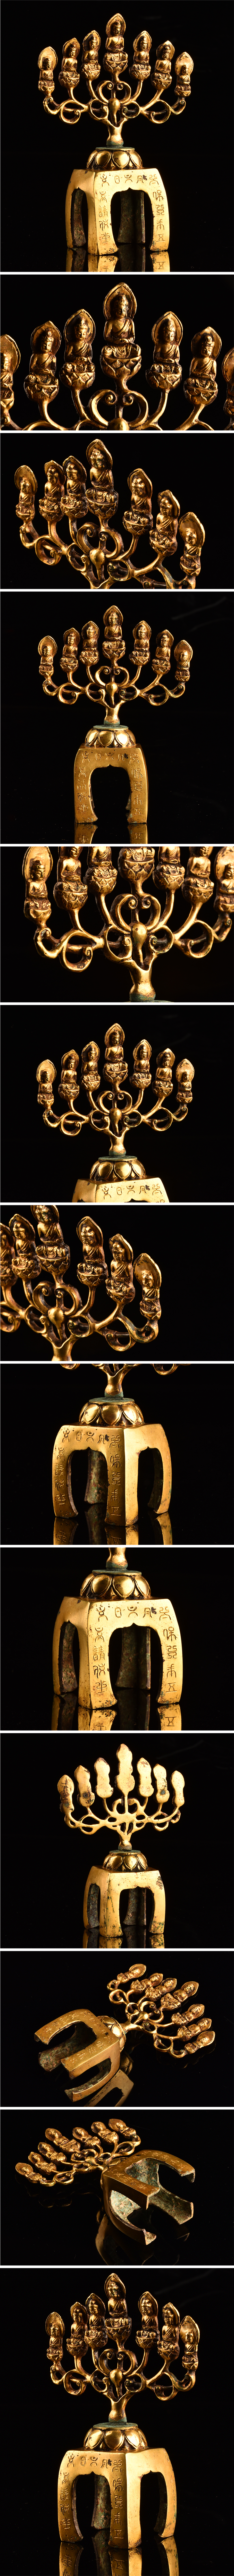 低価送料無料仏教美術 中国 鍍金銅仏像 高16cm TF986 仏像